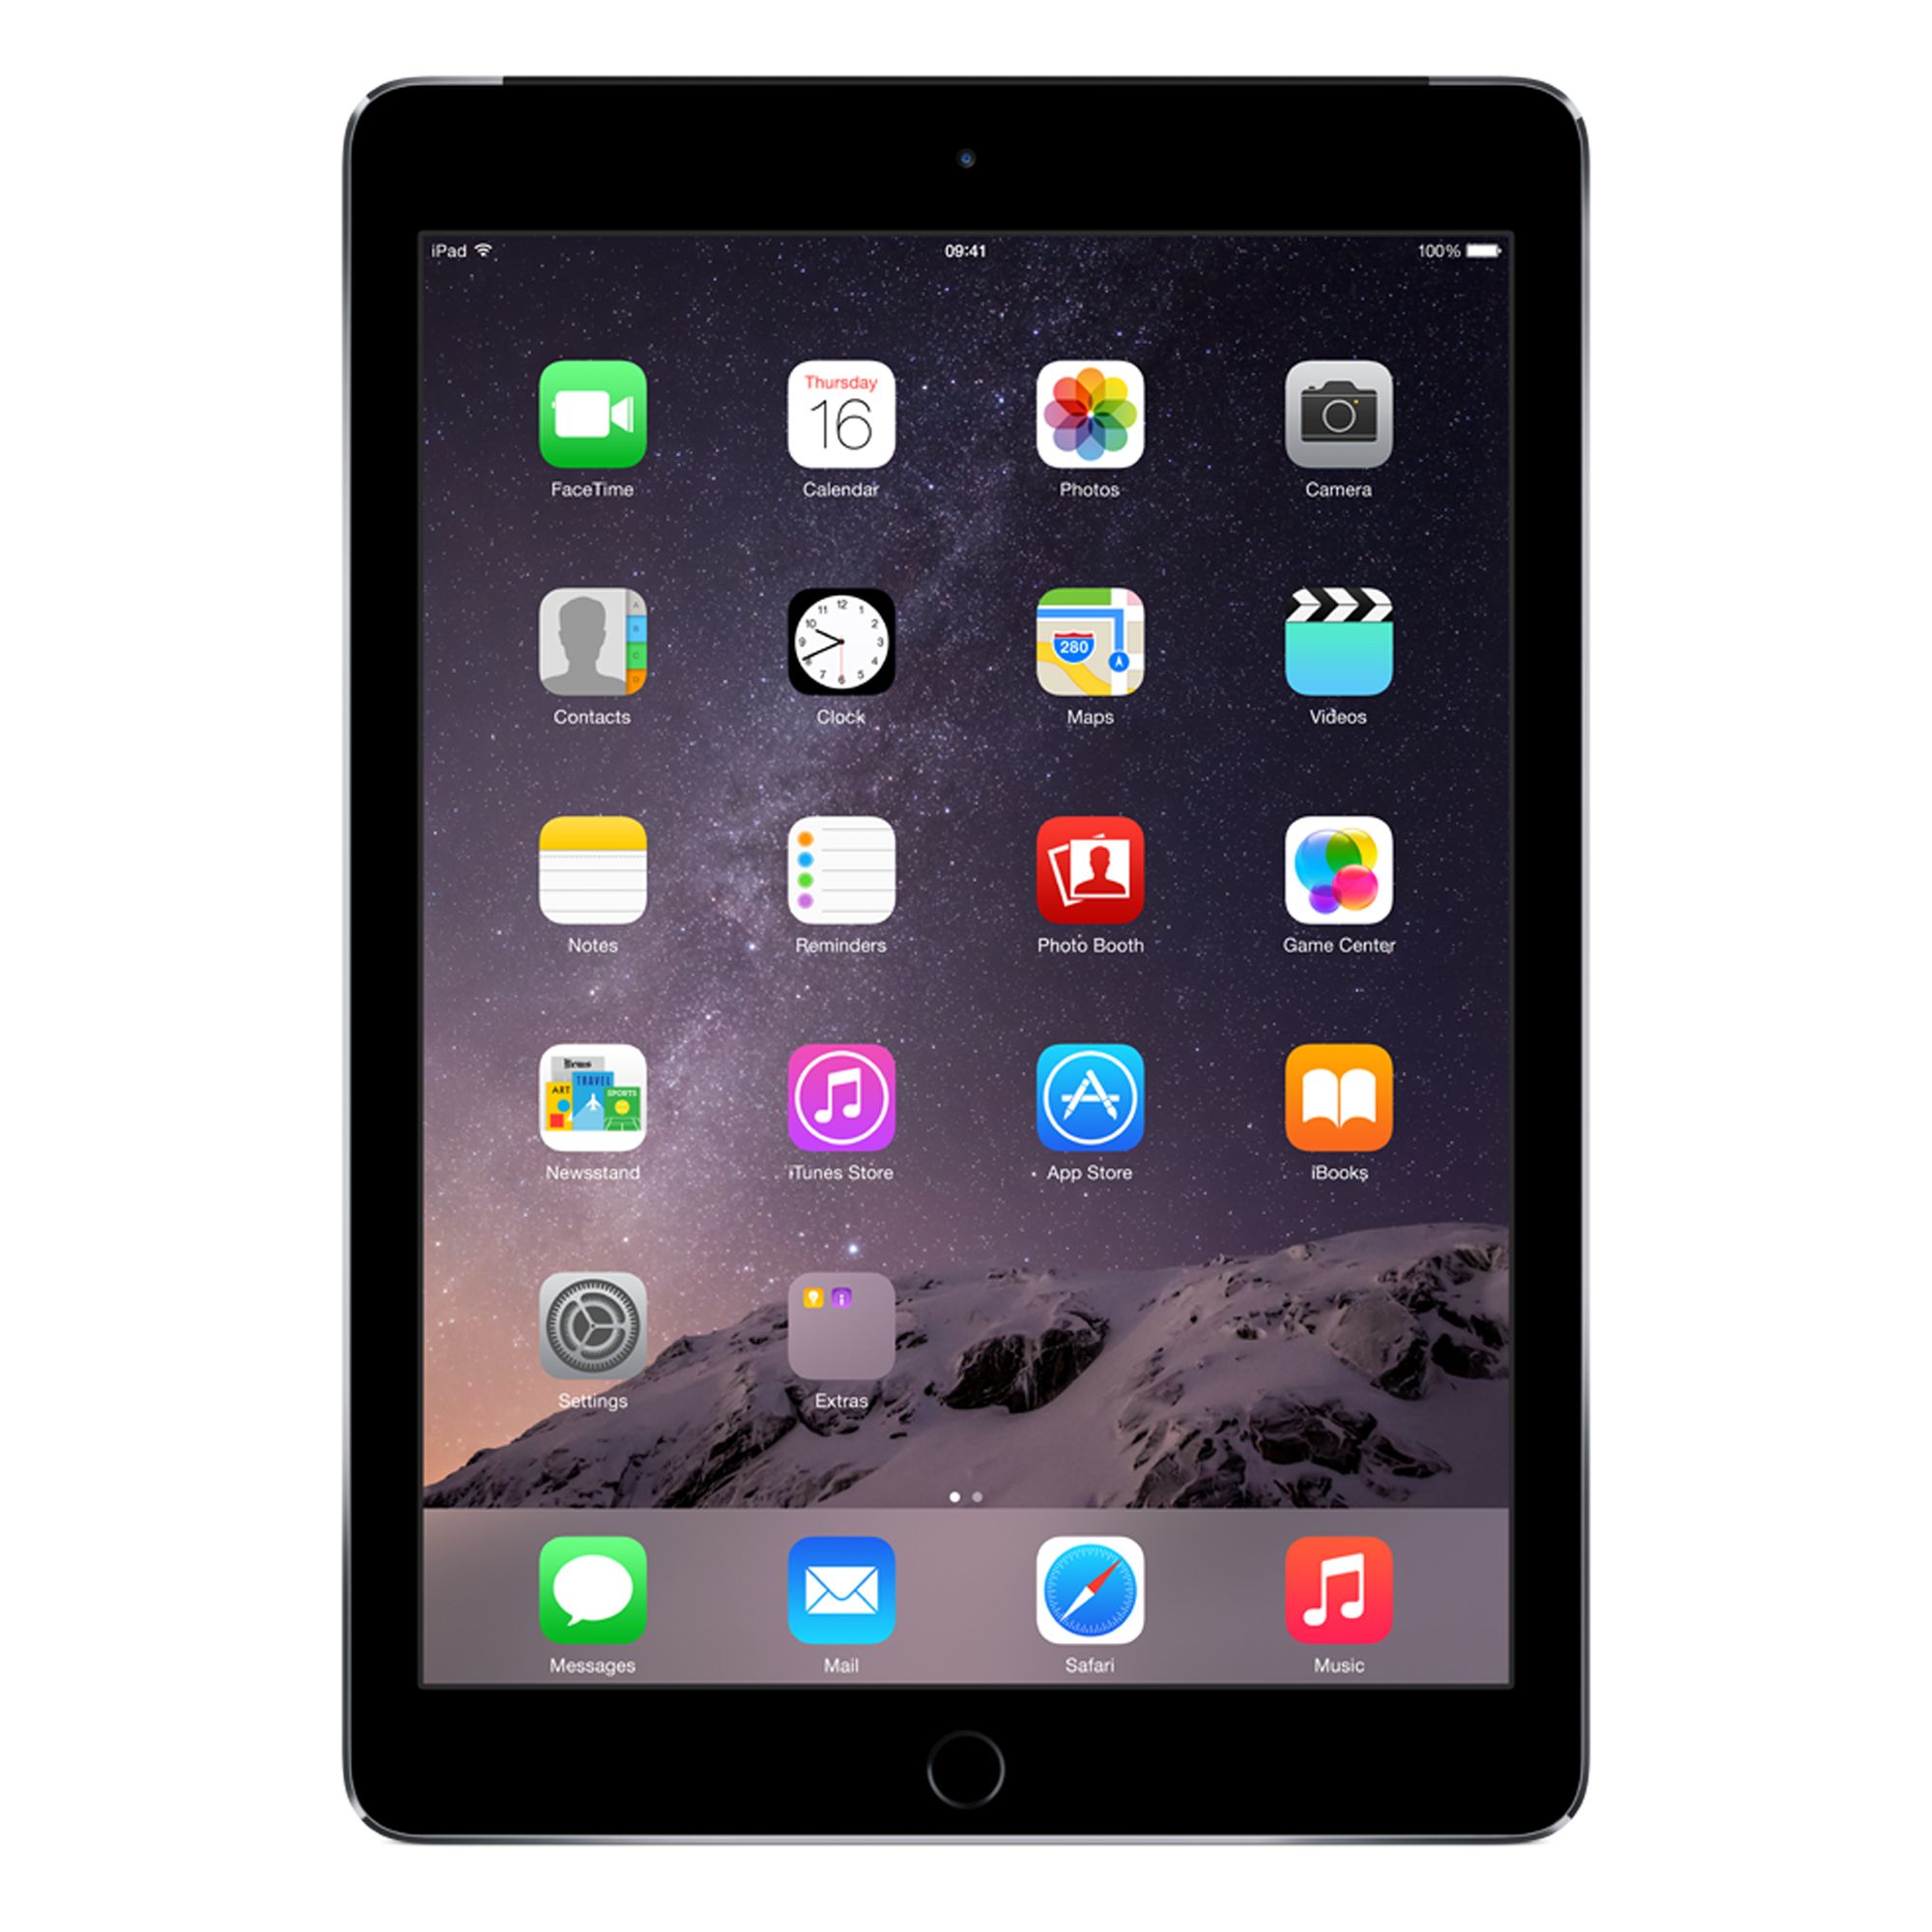 Apple iPad Air 2, Apple A8X, iOS, 9.7